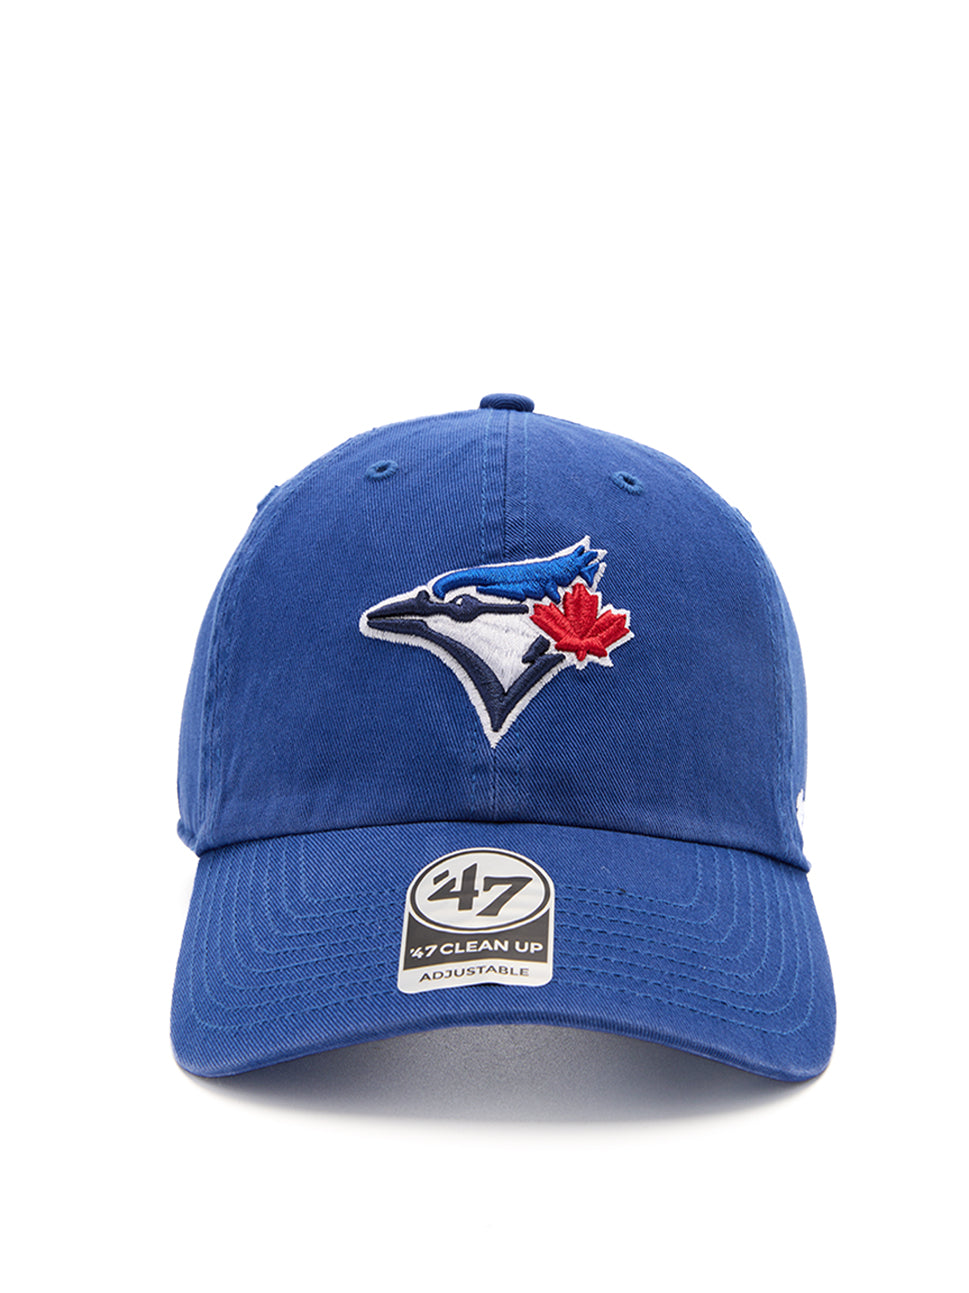 Shop latest trending '47 Brand Royal Blue color Caps & Headwear